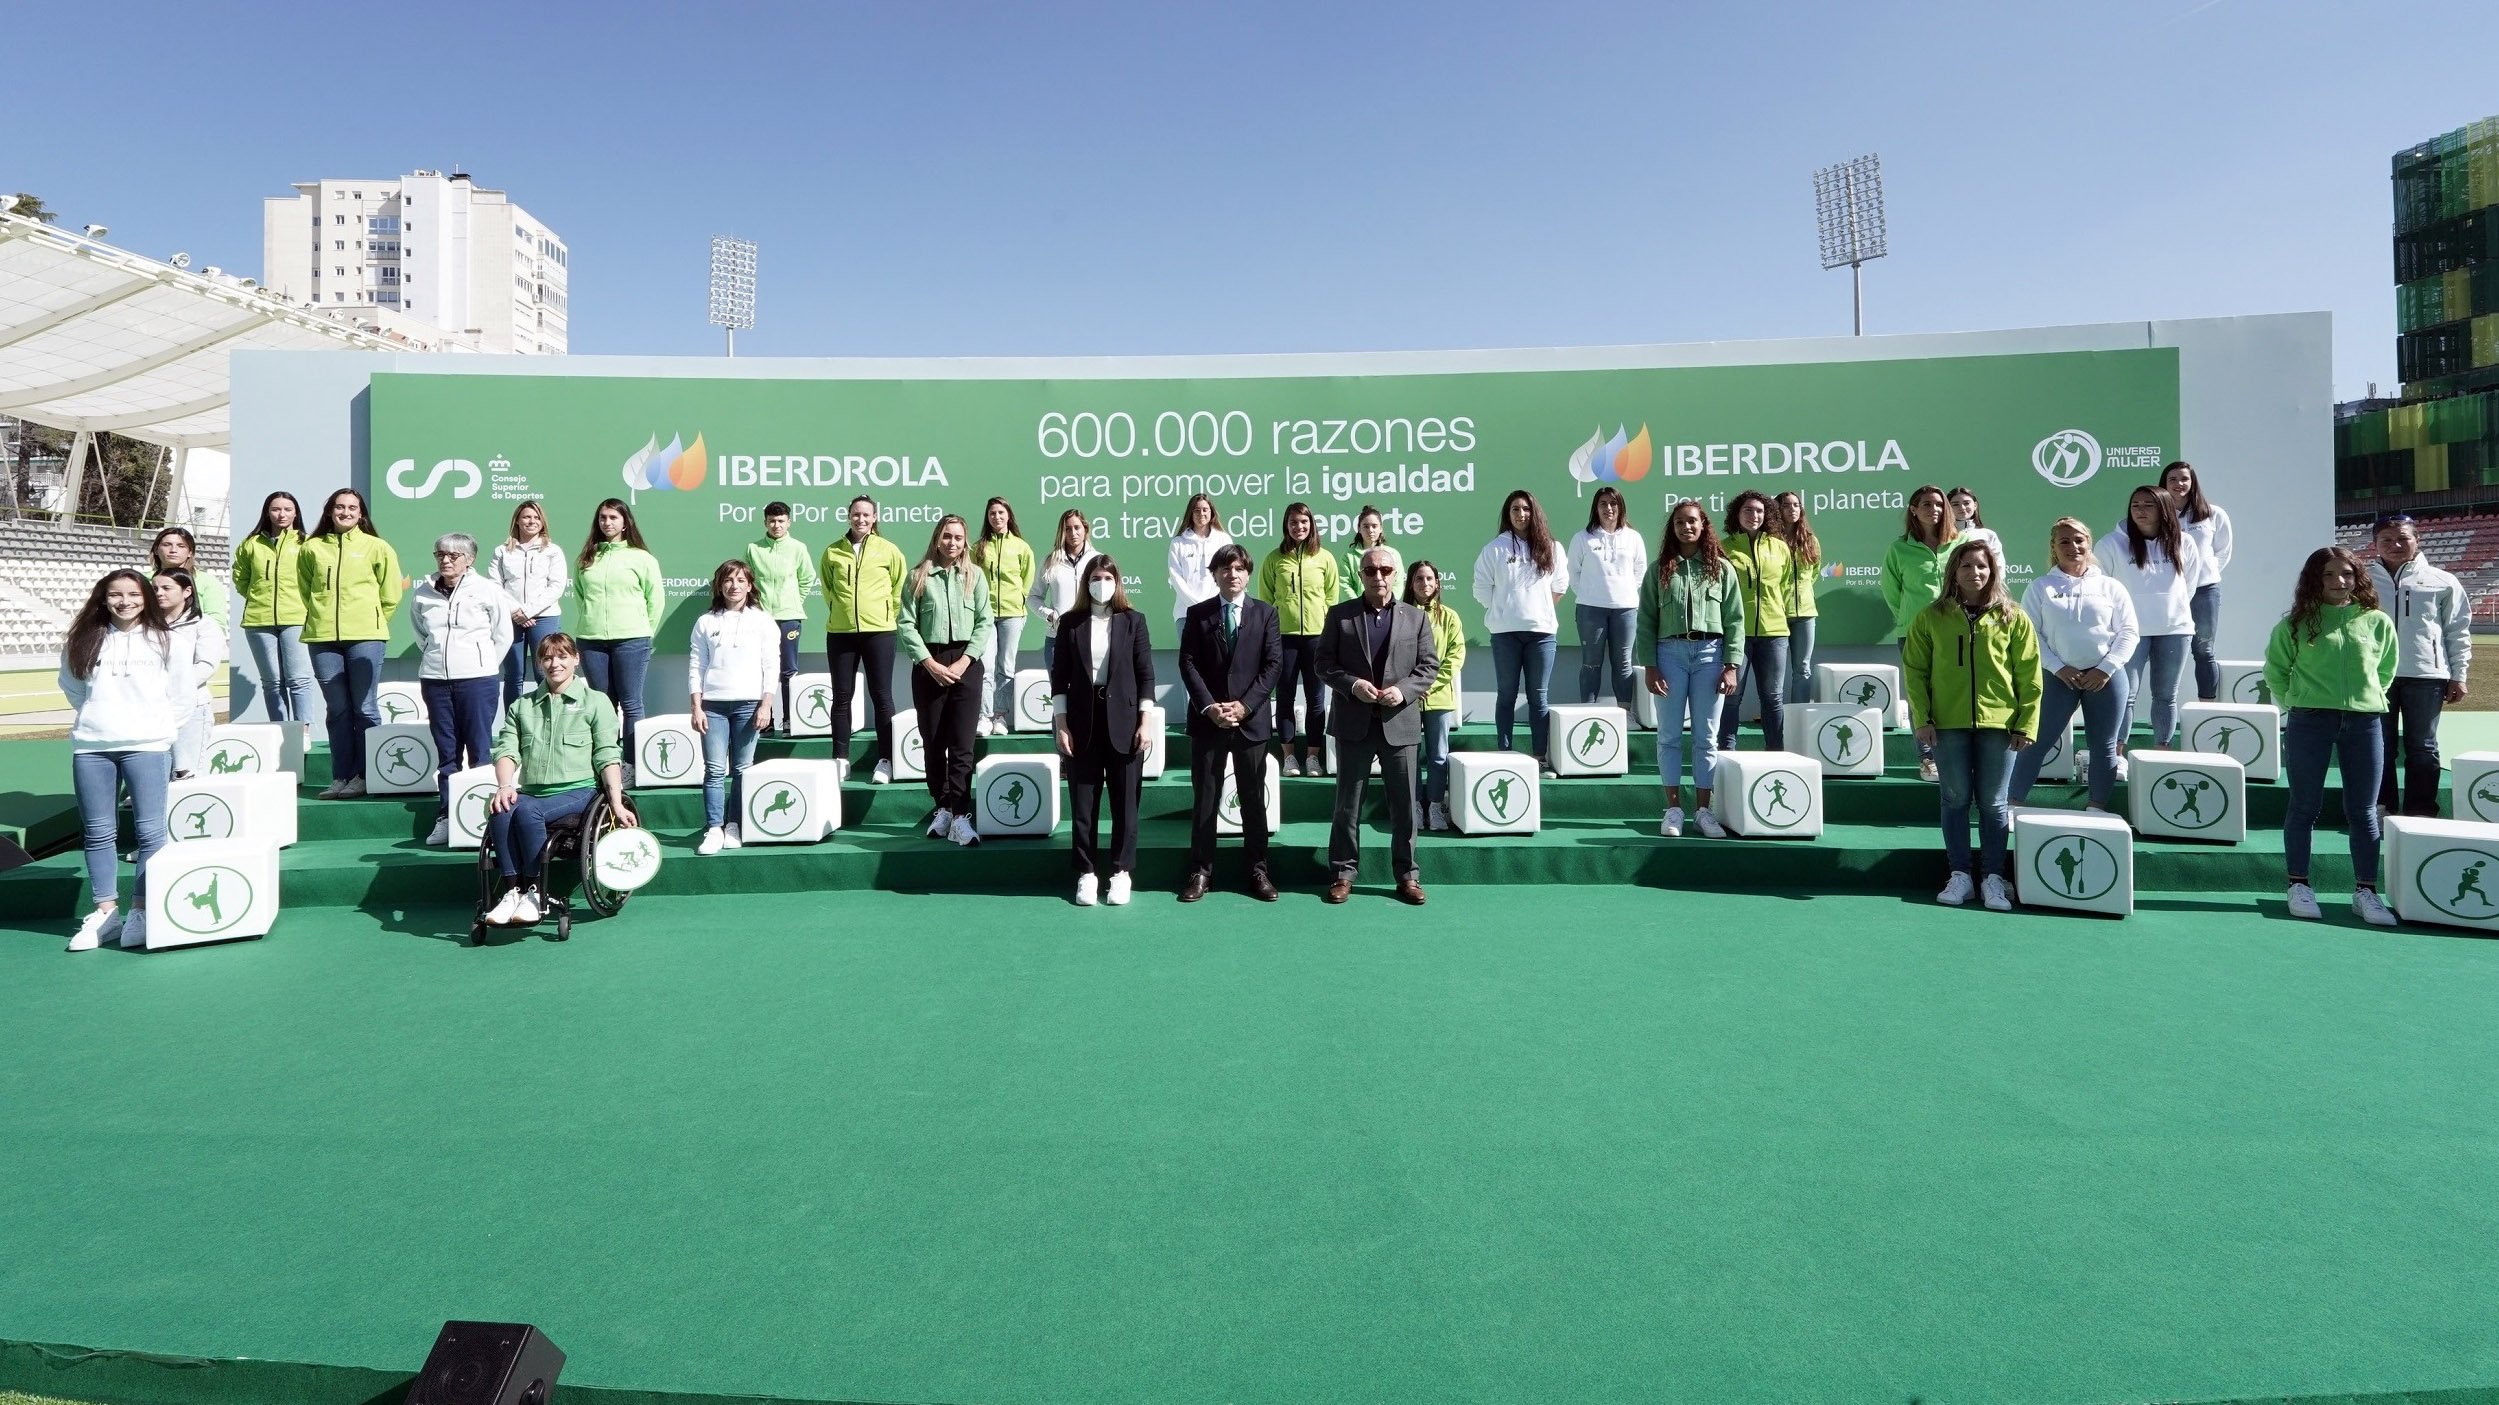 Iberdrola, Iberdrola y la RFEDH renuevan su compromiso hasta 2024, Real Federación Española Deportes de Hielo